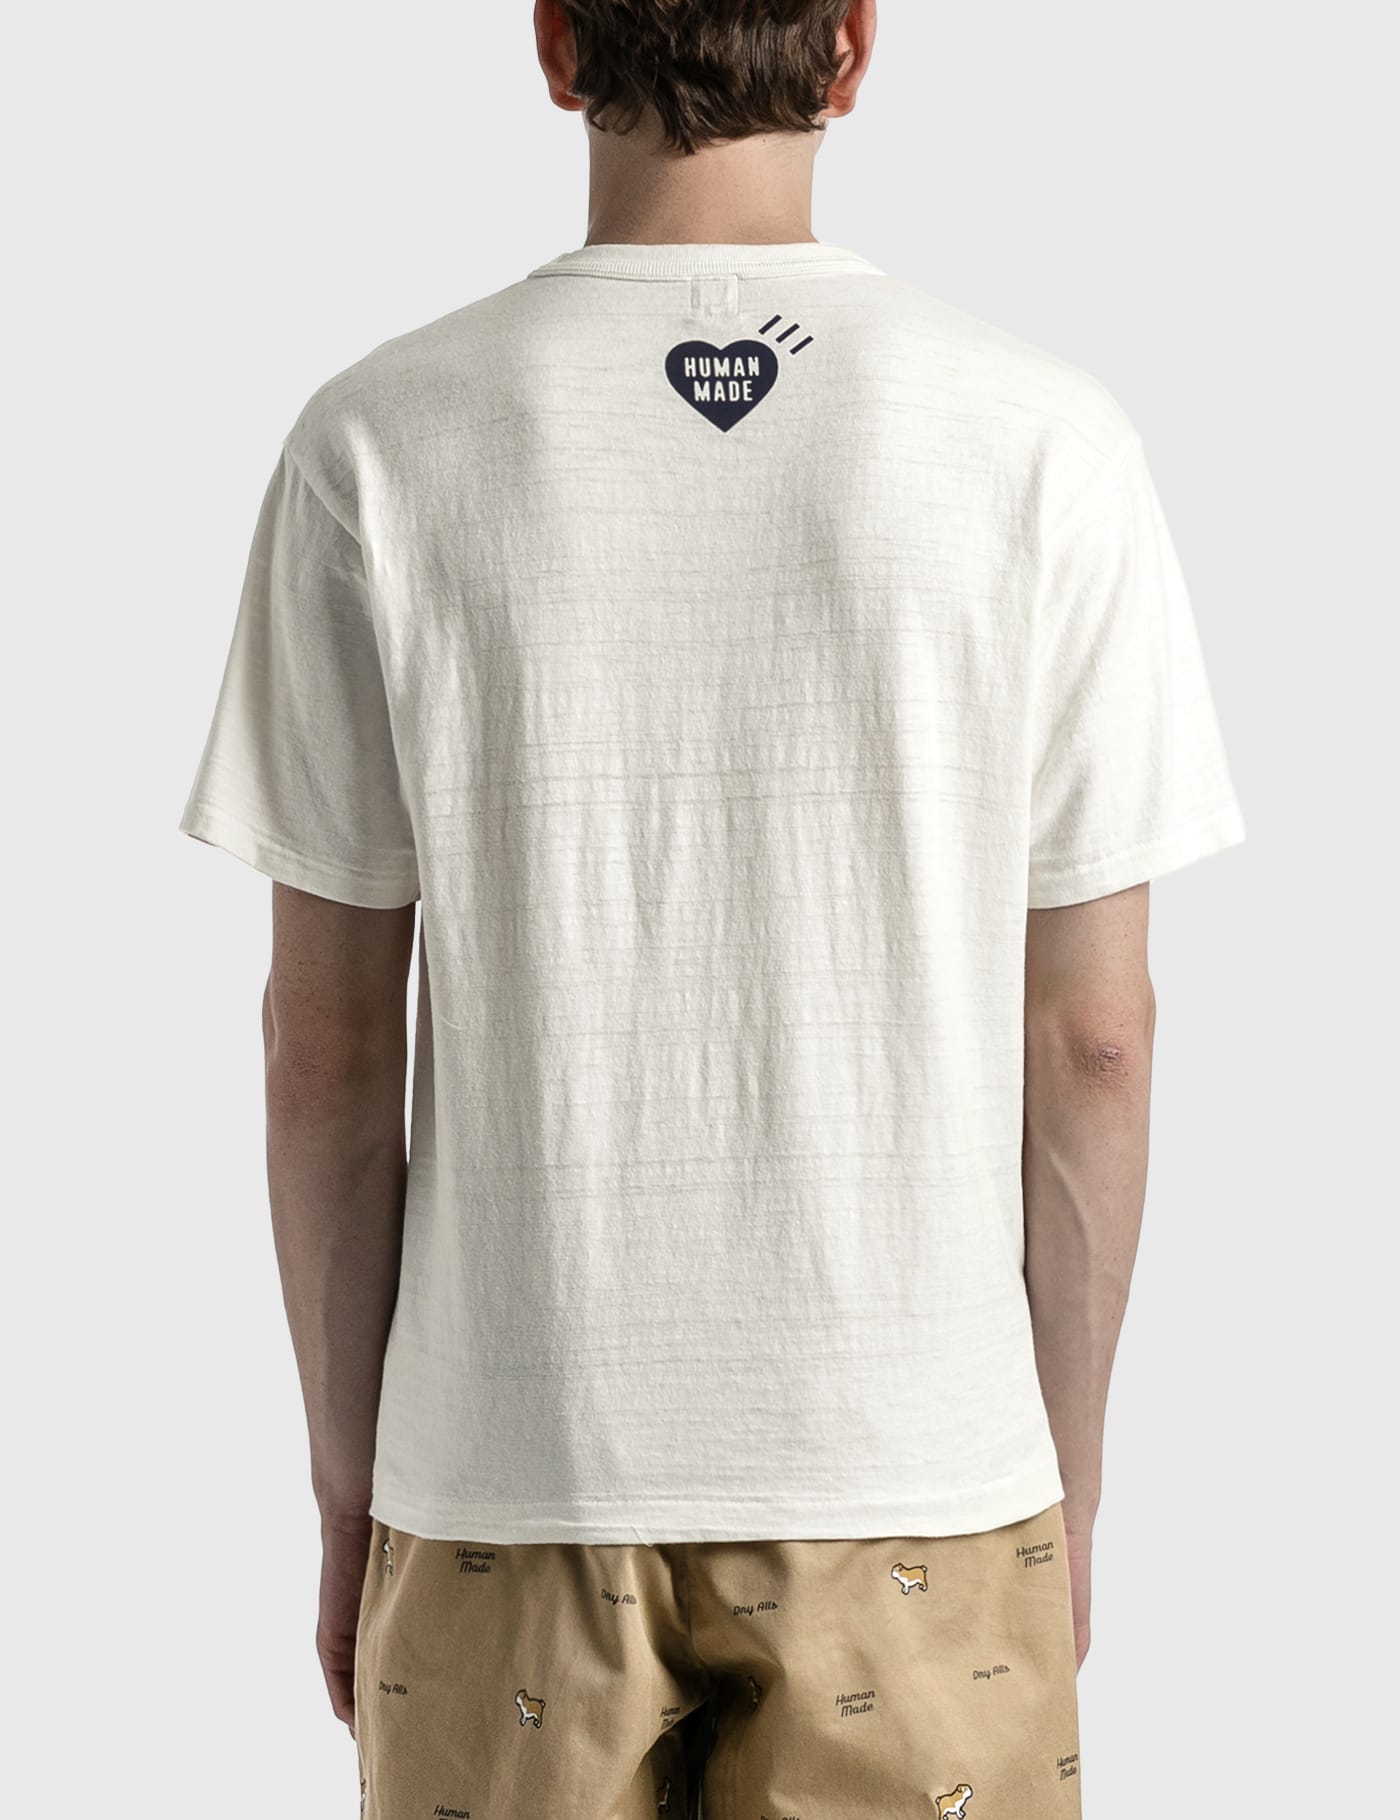 Human Made - Human Made ダックス Tシャツ | HBX - ハイプビースト 